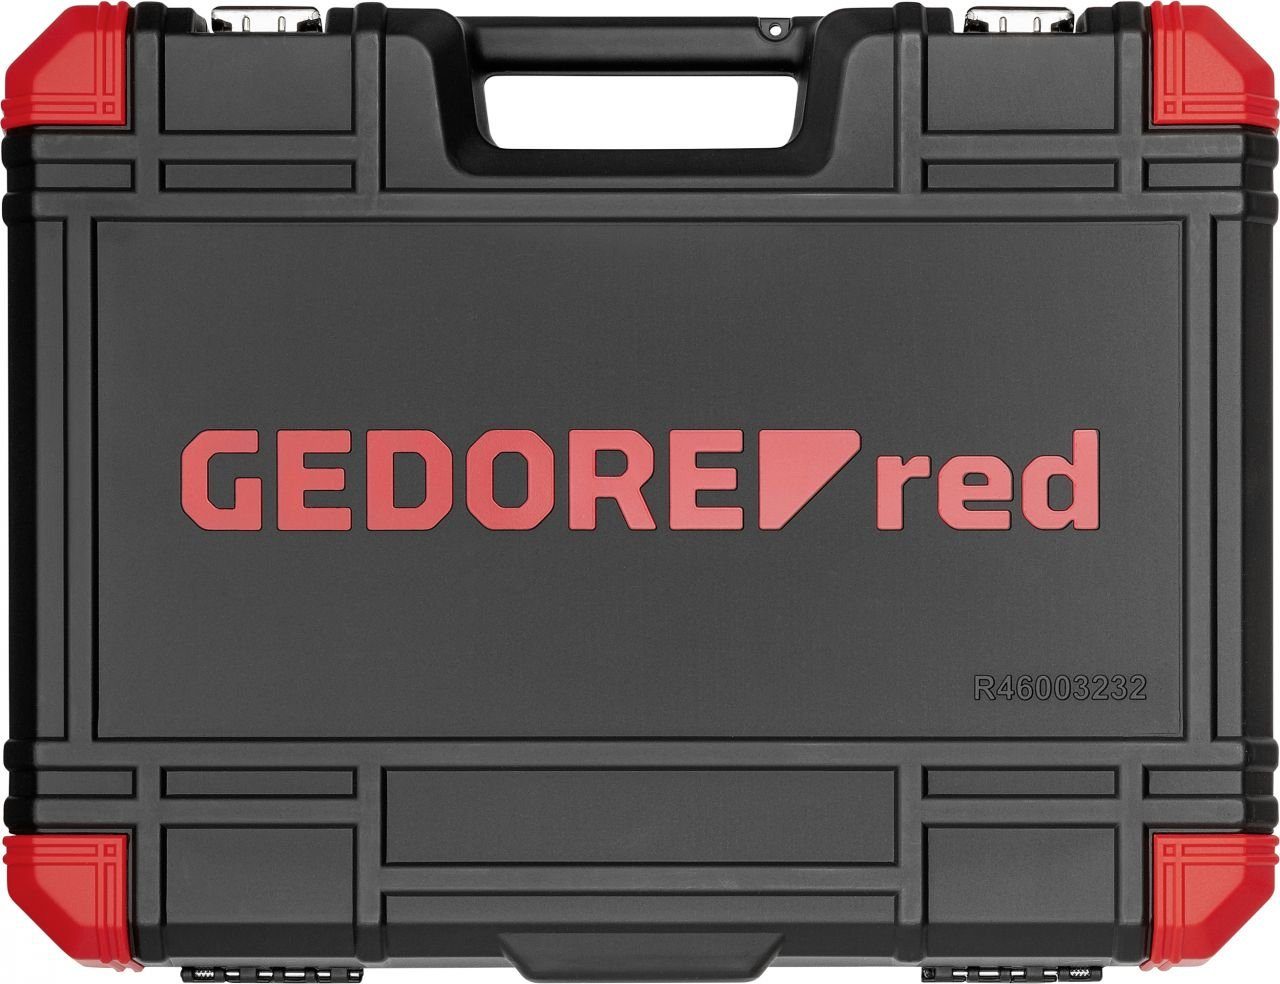 Red Steckschlüssel Gedore 1/4 Red Steckschlüsselsatz Gedore All-IN R46003232